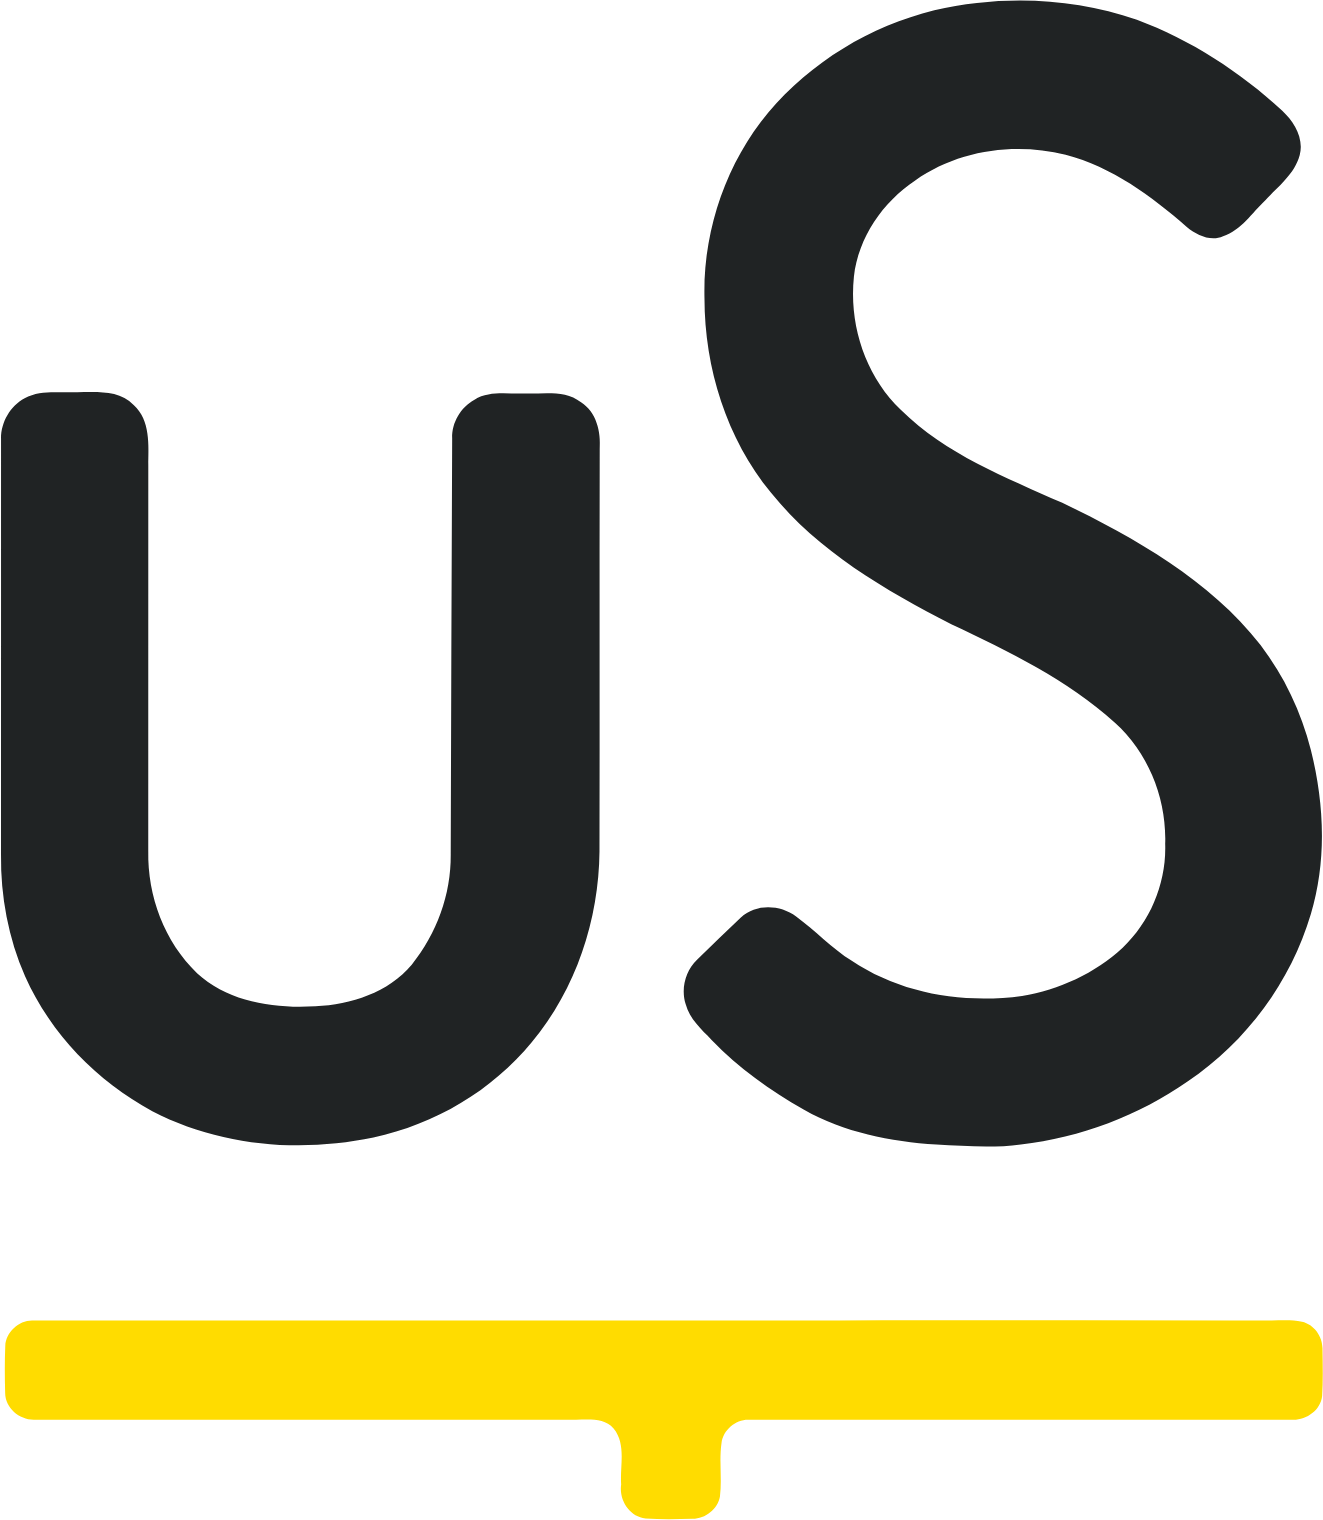 Unite Group (Unite Students) logo (PNG transparent)